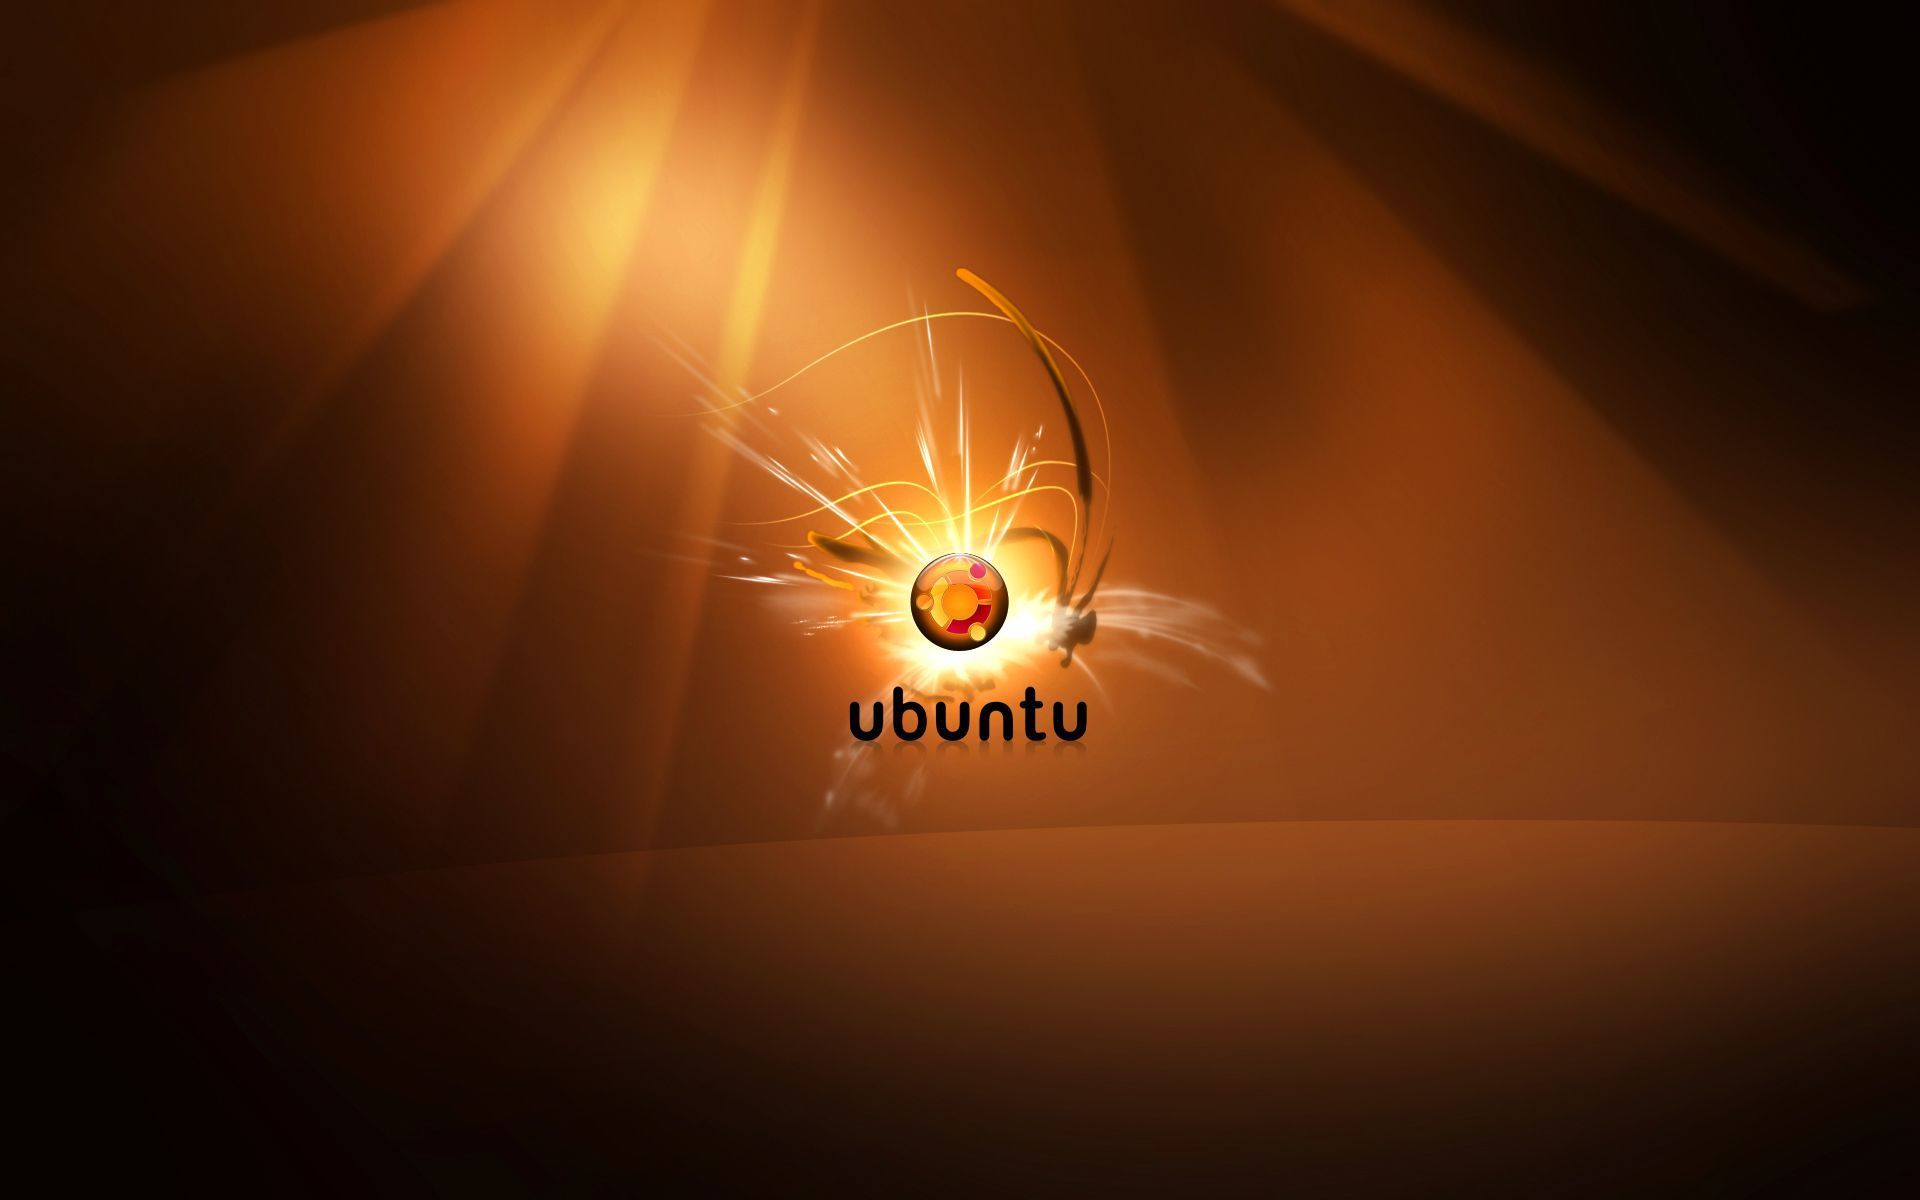 Top 10 Ubuntu HD Wallpapers Toptenpack.com